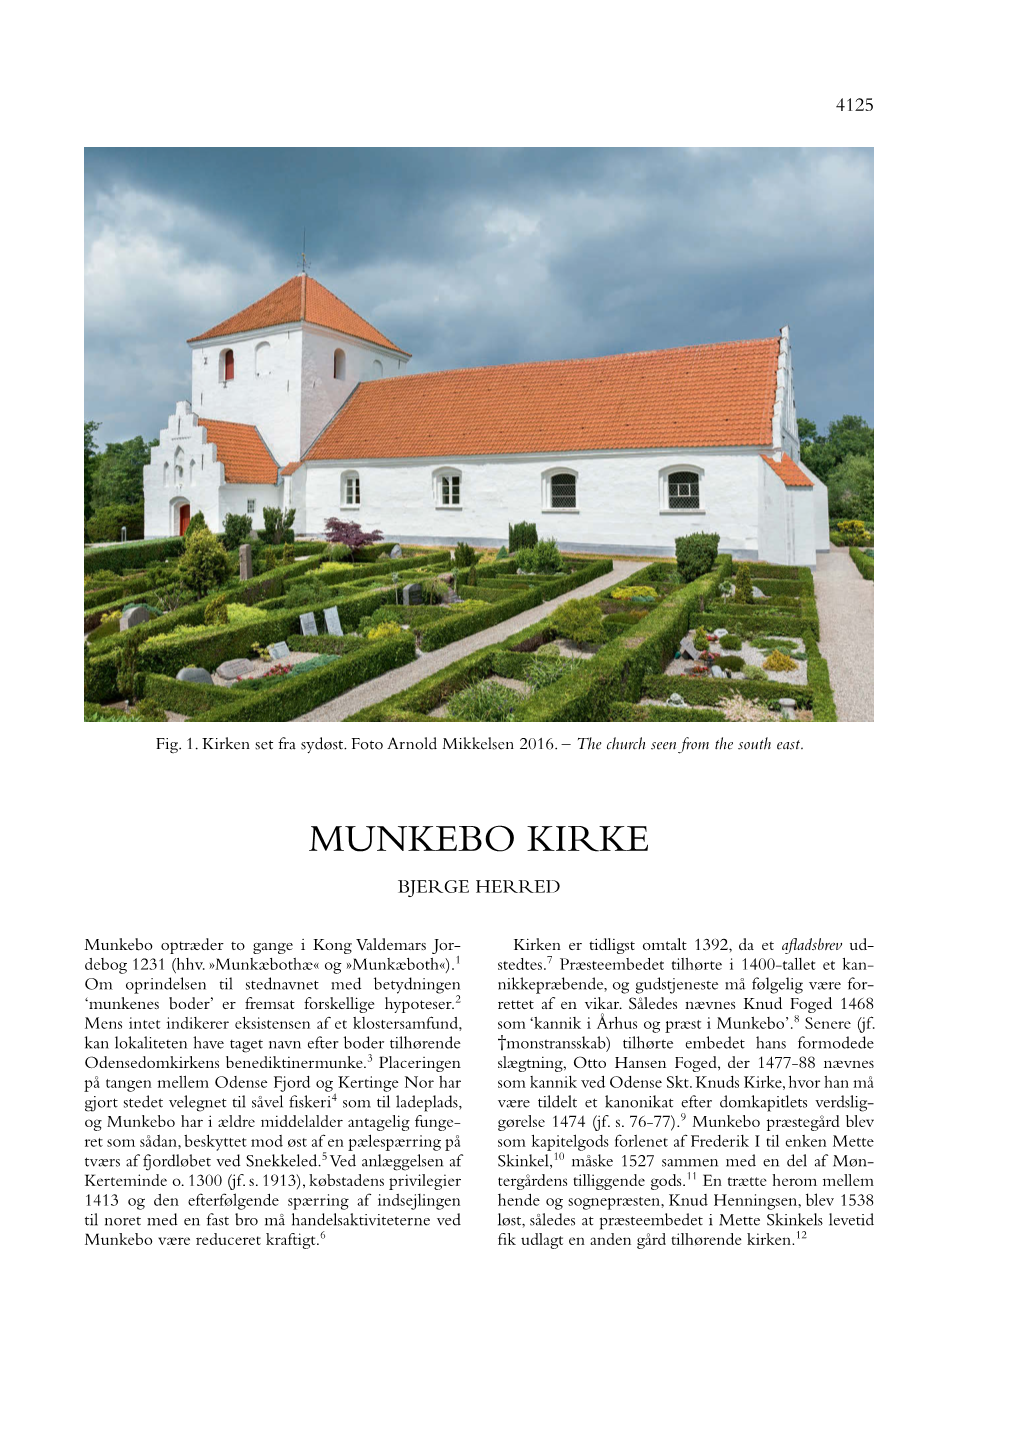 Munkebo Kirke Bjerge Herred